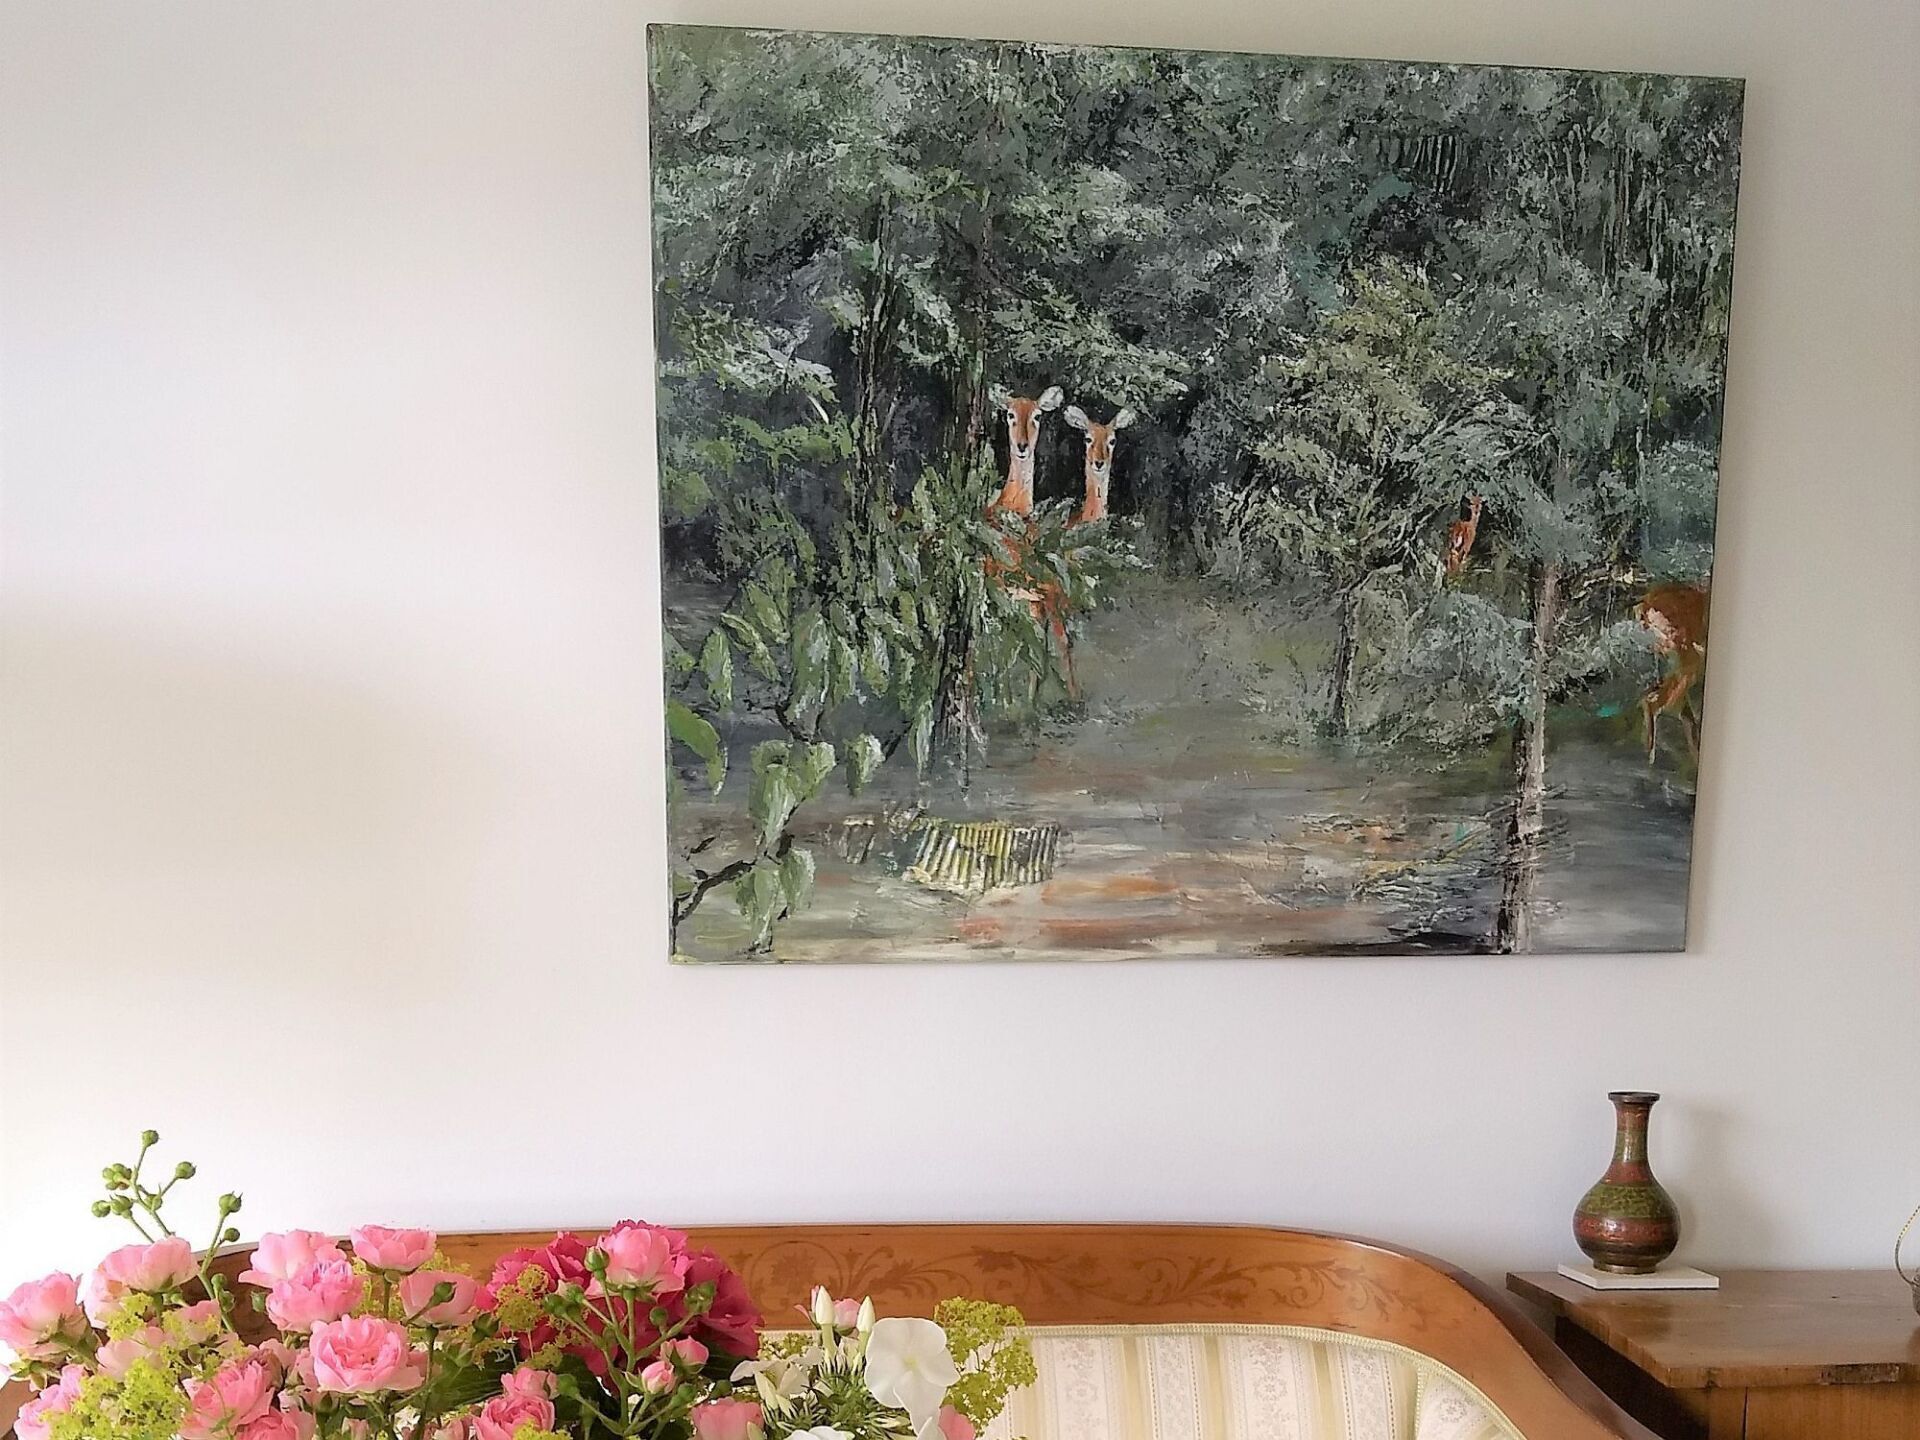 Gemälde mit Buschböcken in Ghana an einer Wand über einem Sofa